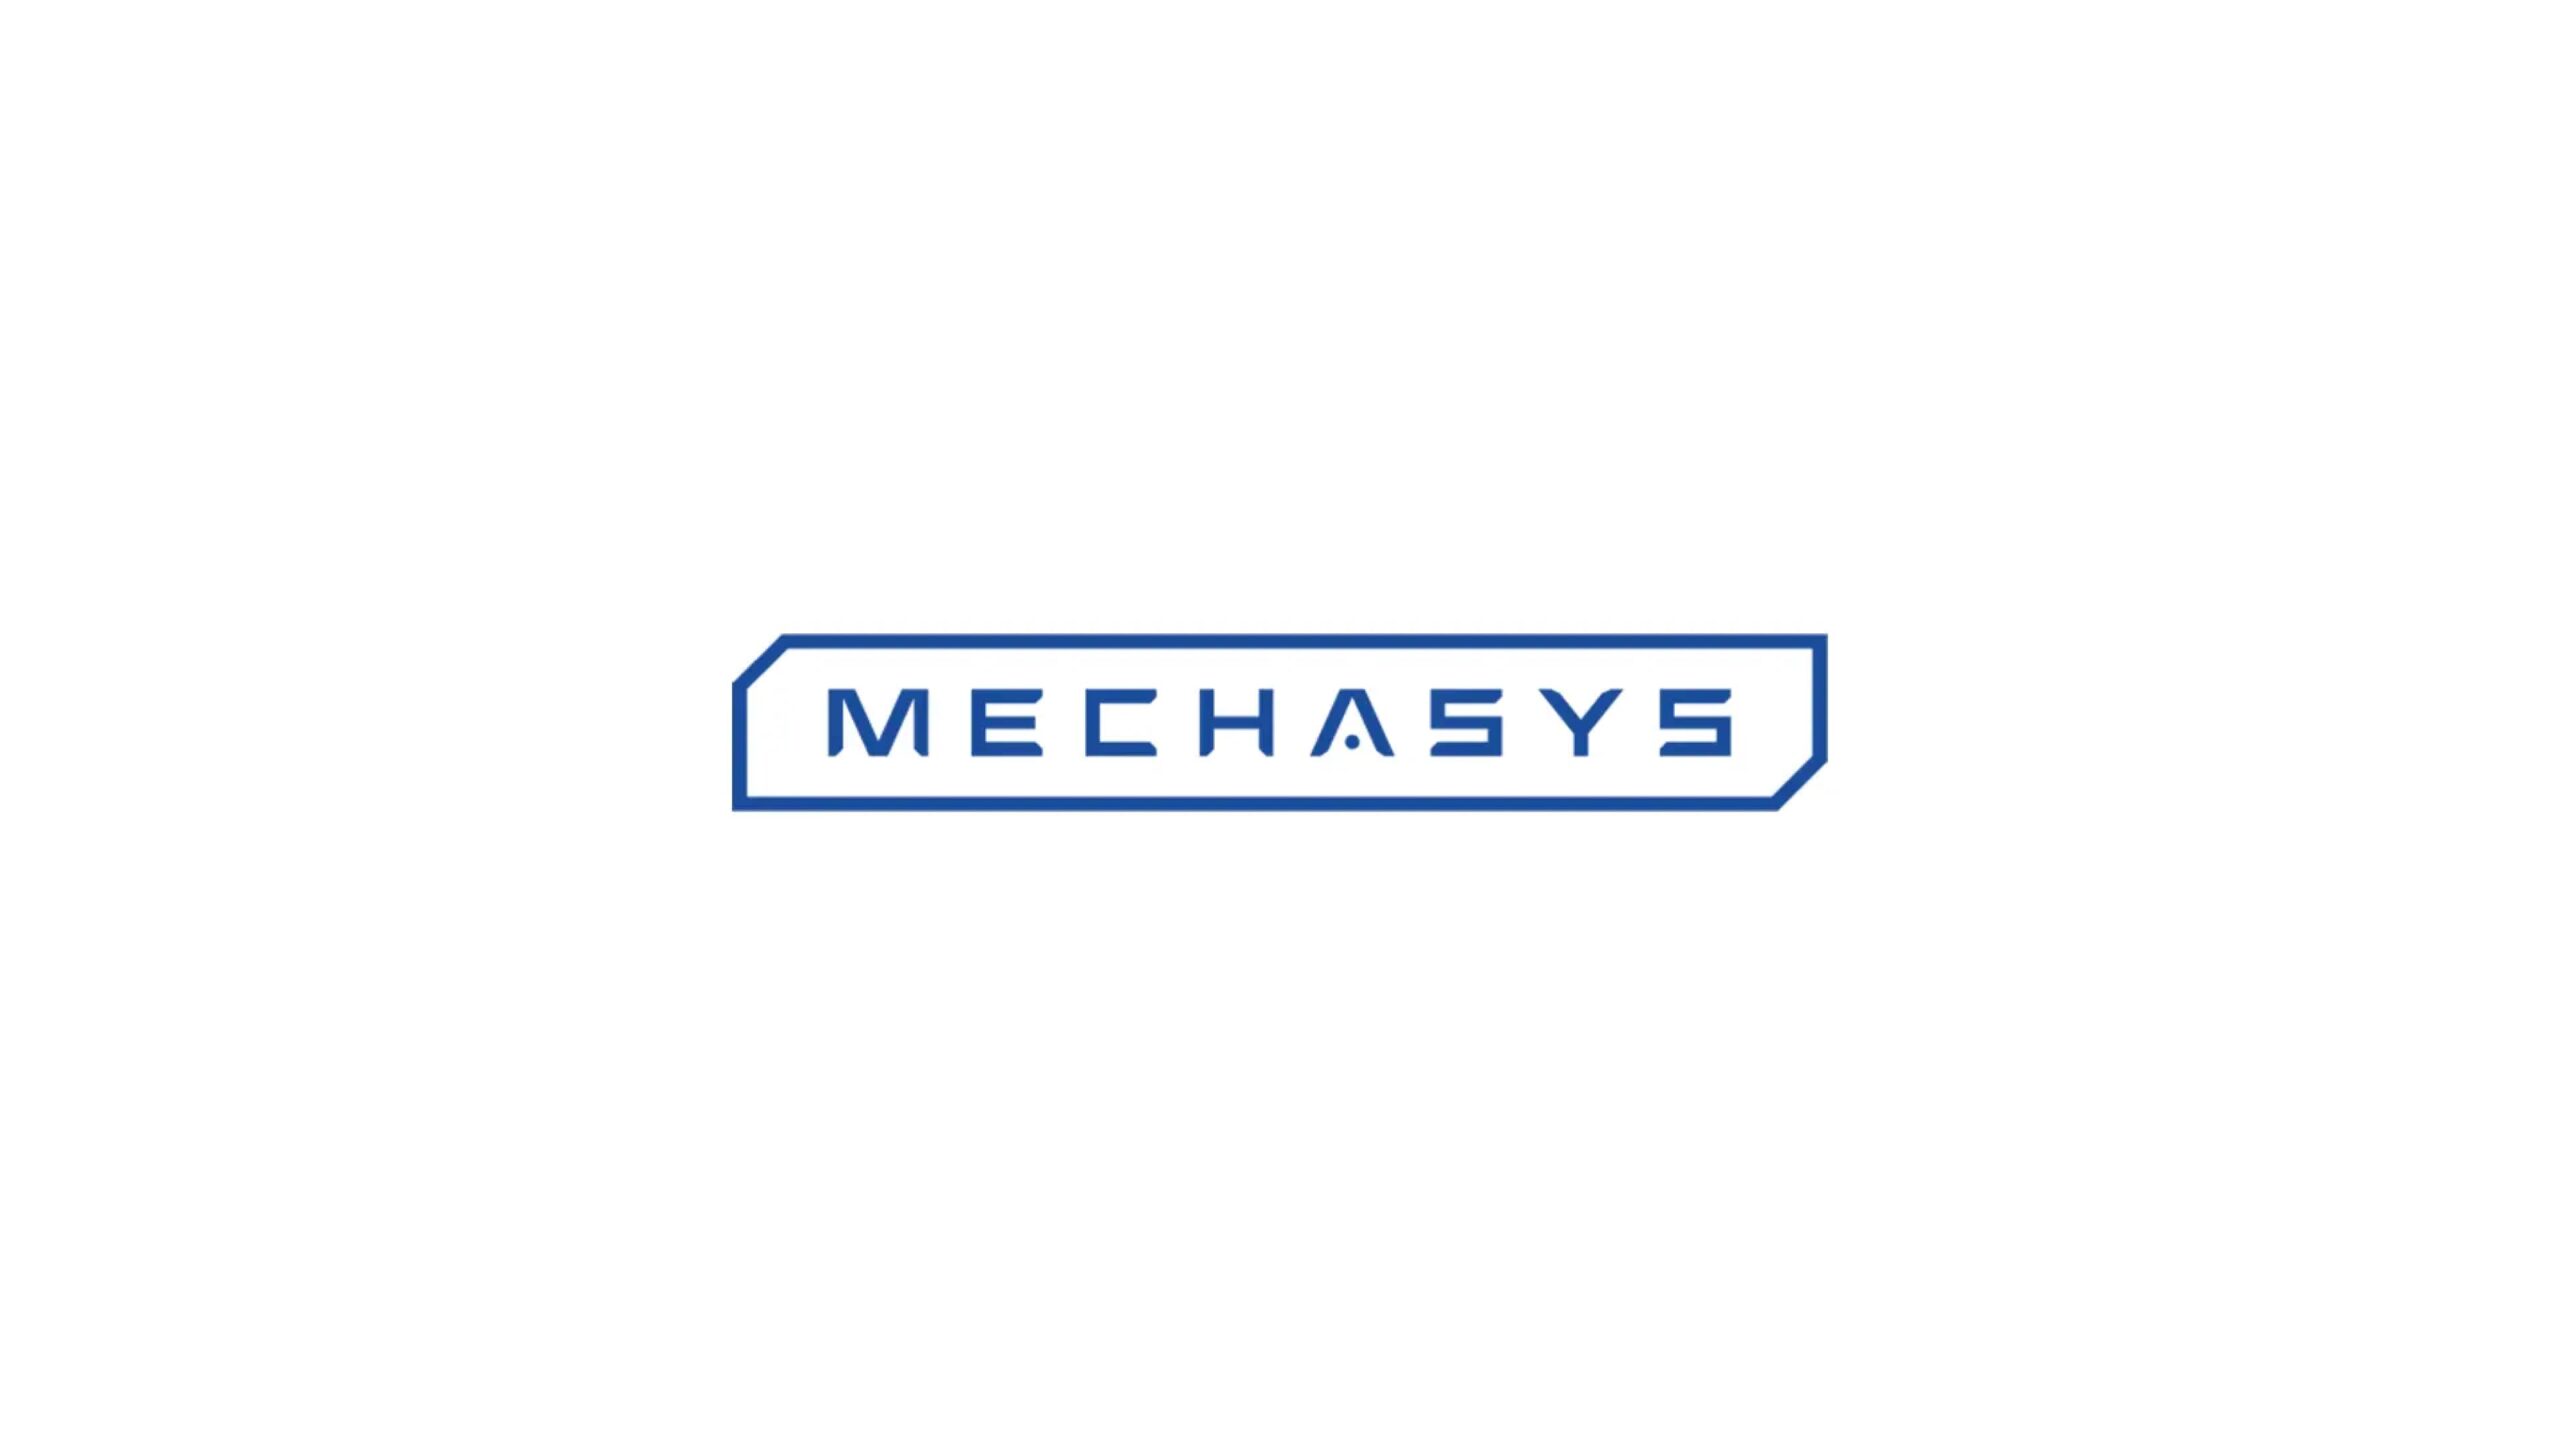 建設現場の墨出し作業用プロジェクターを開発するMechasysがグローバル・ブレインより資金調達を実施